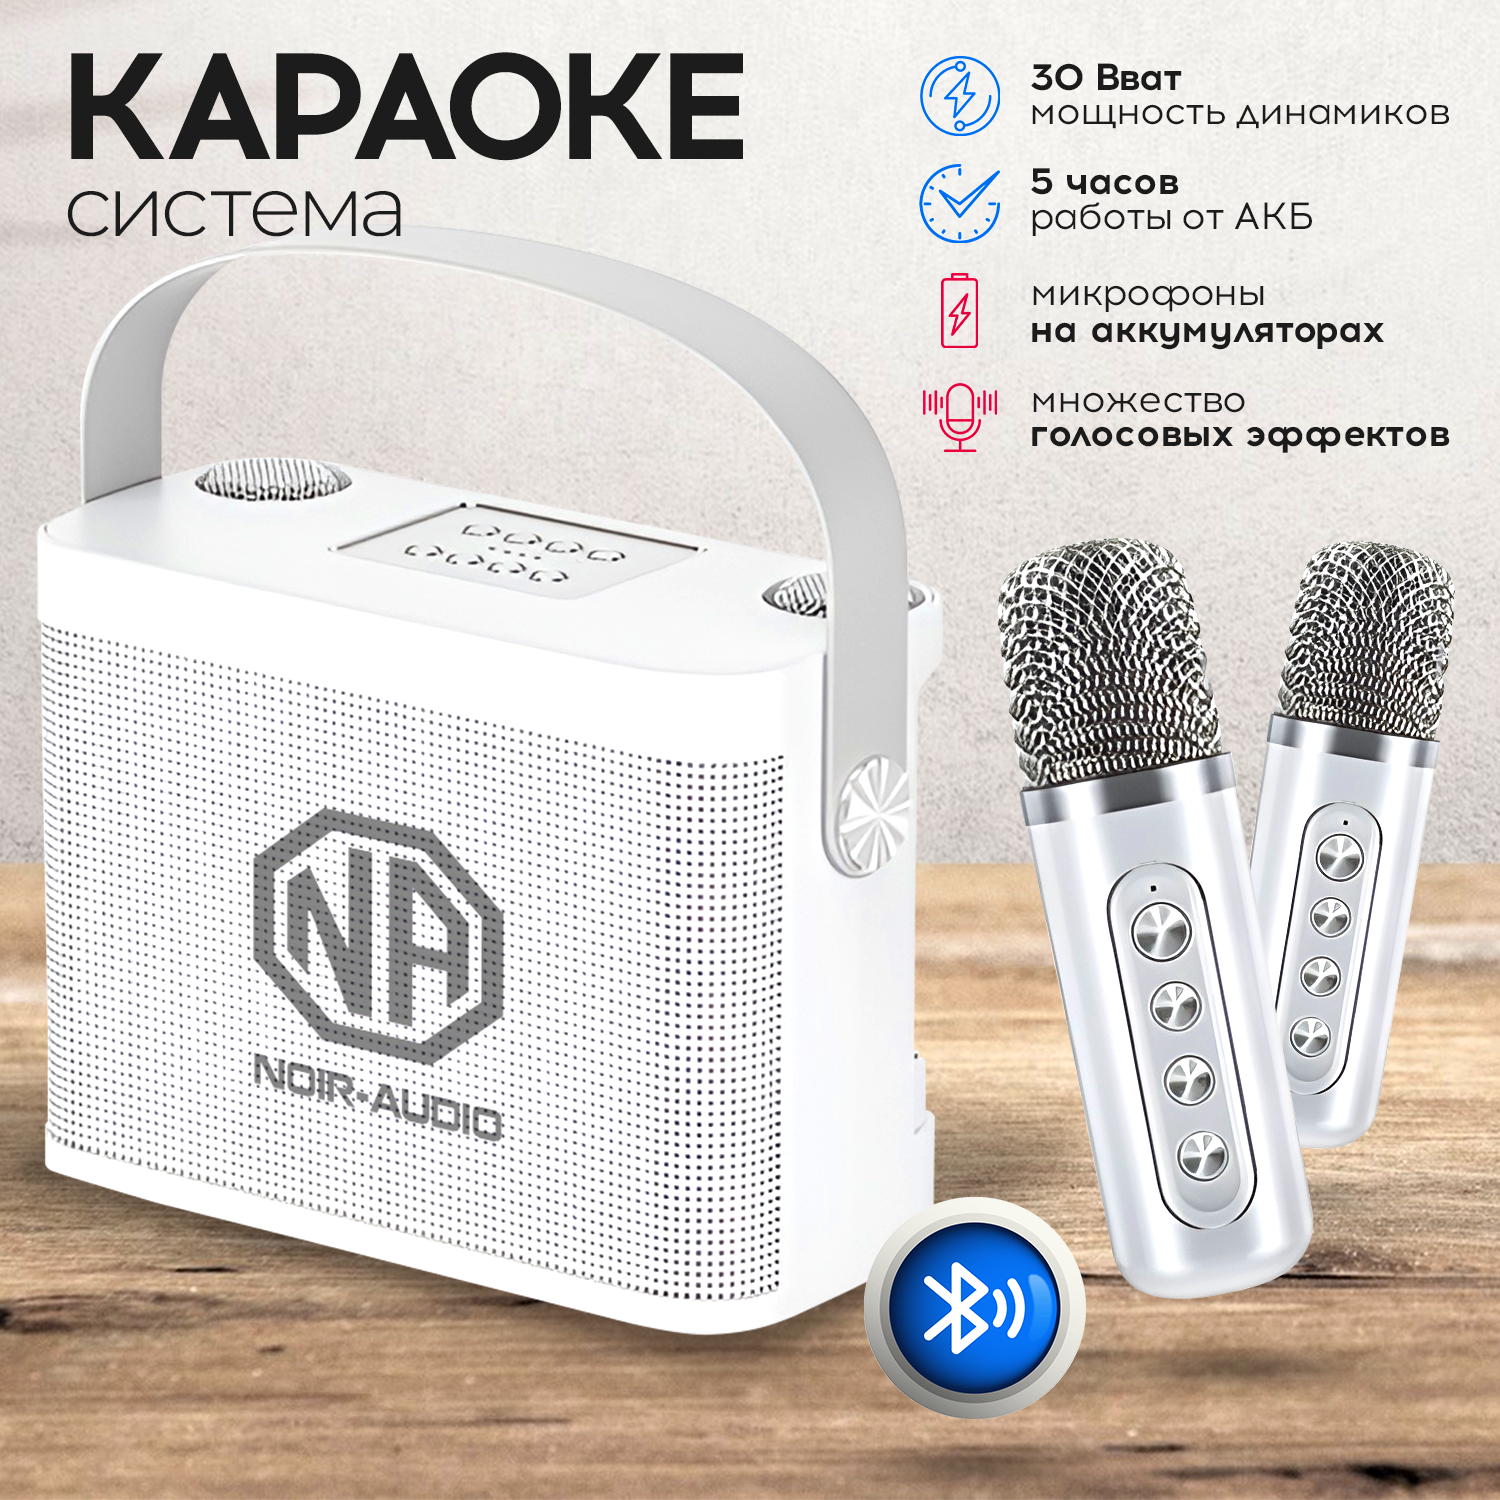 NOIR-audio K-5 акустическая система 30 Ватт с двумя беспроводными микрофонами